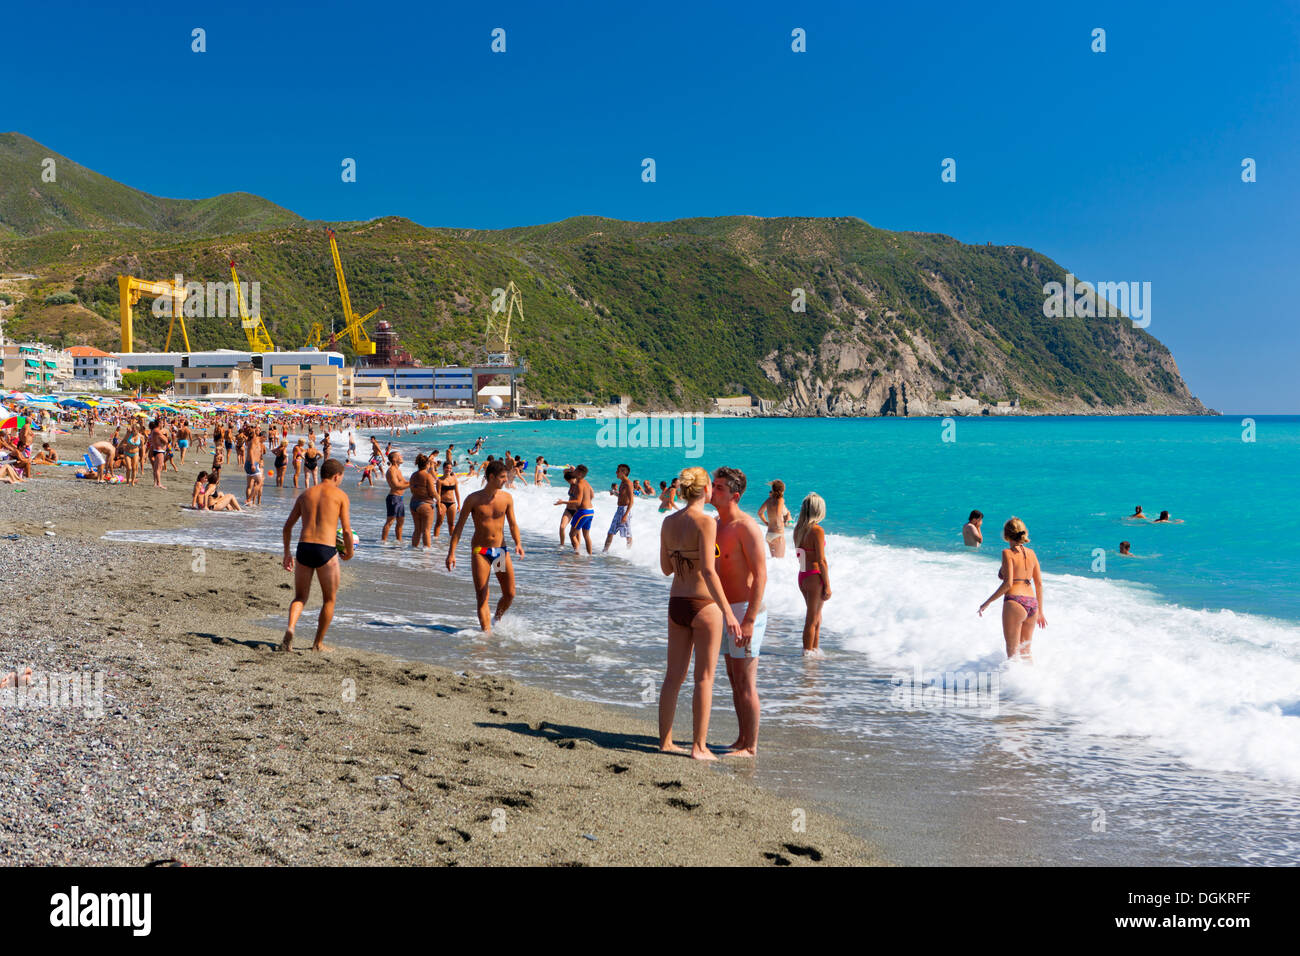 Tourists on the beach at Riva Trigoso. Stock Photo